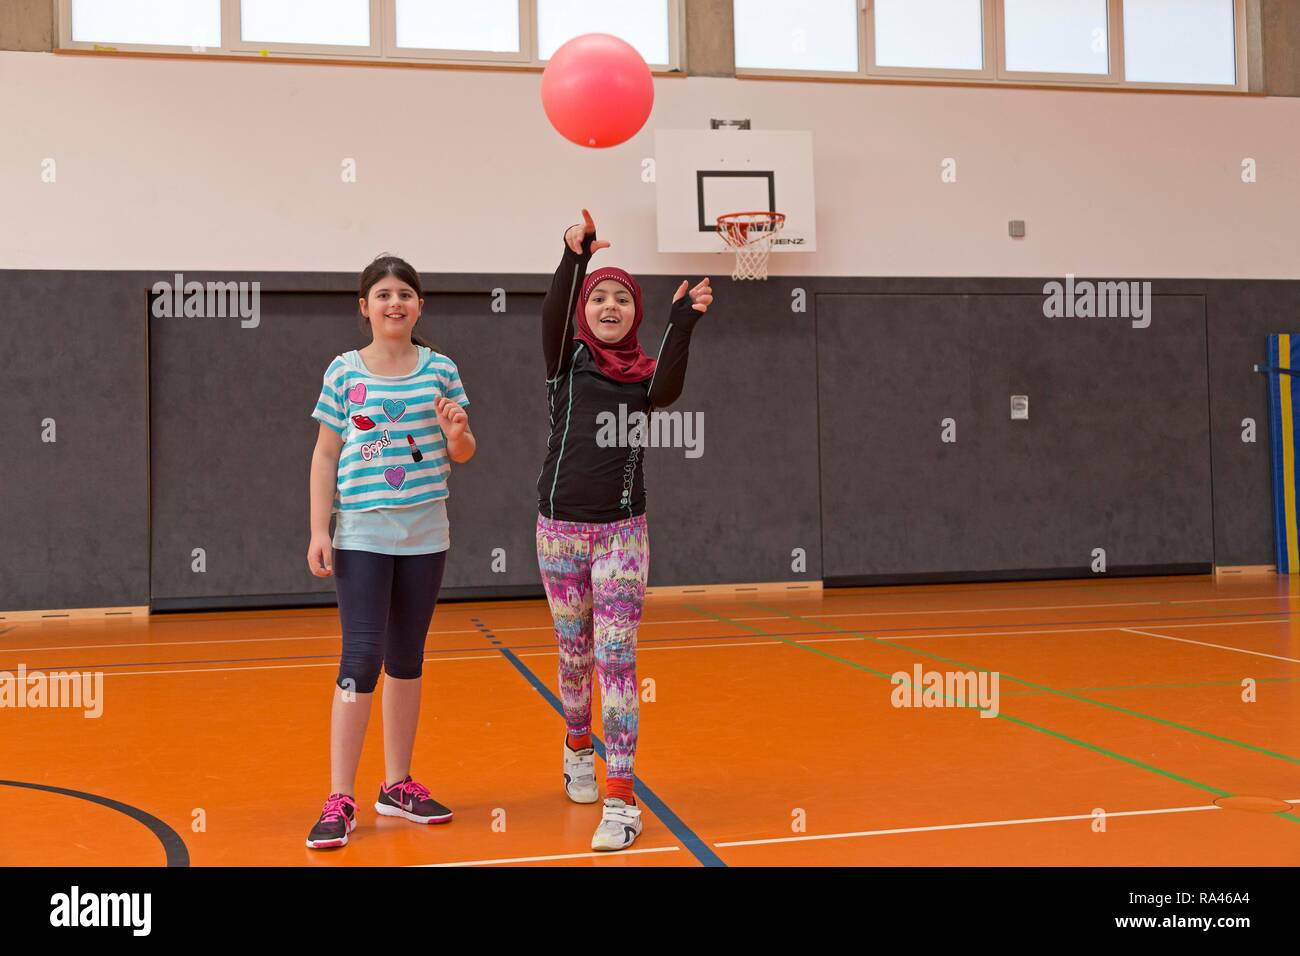 Studenten Ball spielen in der Turnhalle, Leibeserziehung, Grundschule, Niedersachsen, Deutschland Stockfoto